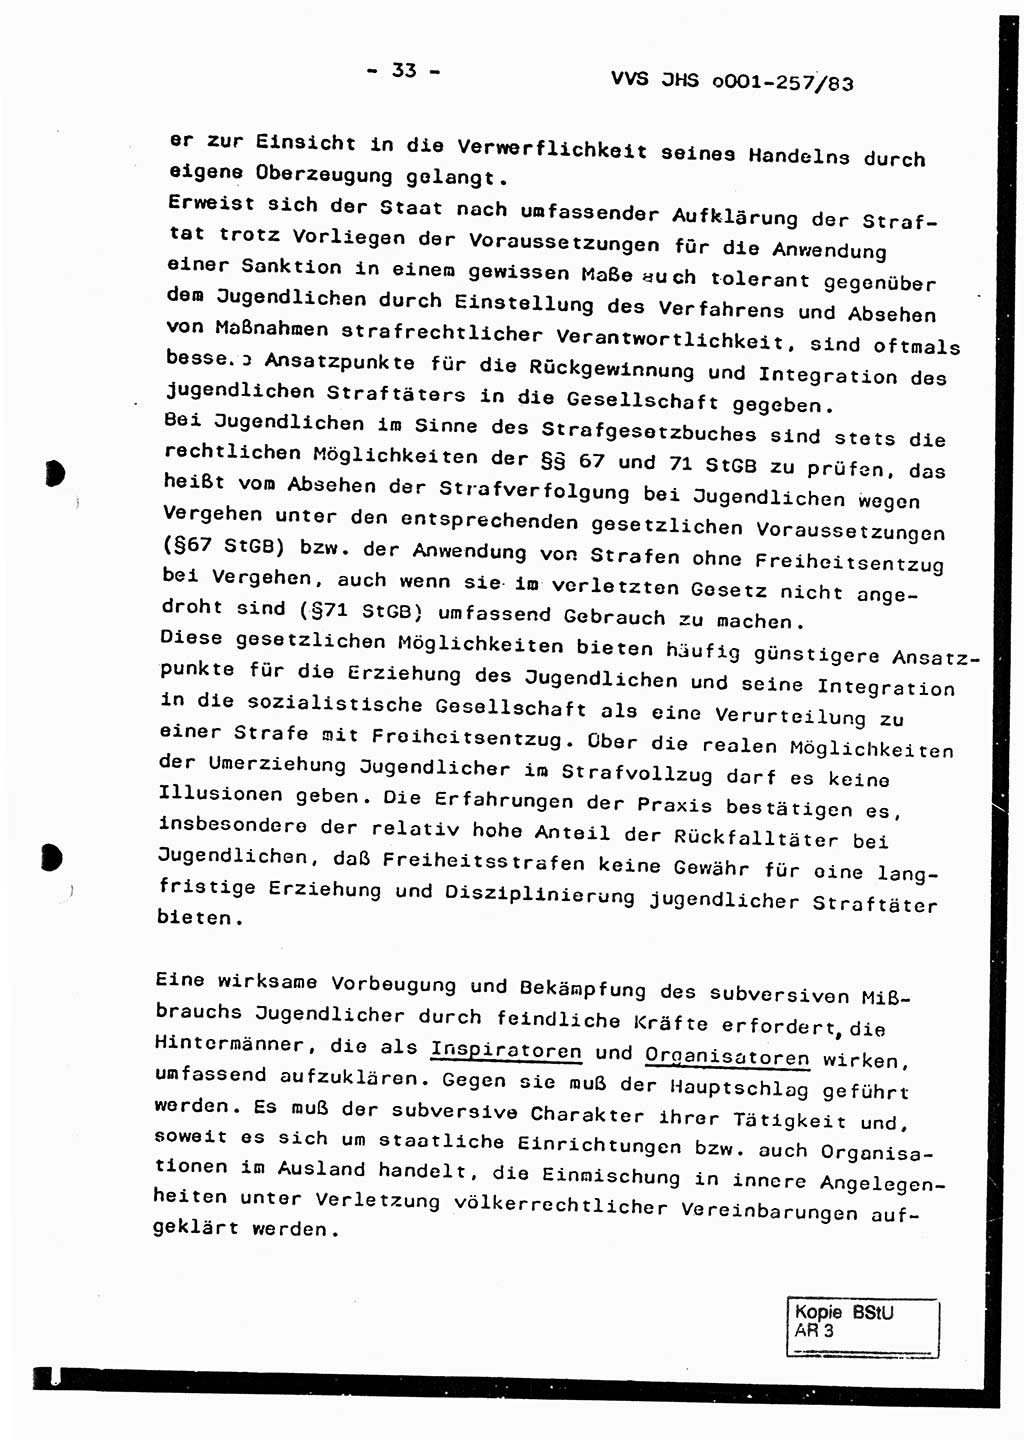 Dissertation, Oberst Helmut Lubas (BV Mdg.), Oberstleutnant Manfred Eschberger (HA IX), Oberleutnant Hans-Jürgen Ludwig (JHS), Ministerium für Staatssicherheit (MfS) [Deutsche Demokratische Republik (DDR)], Juristische Hochschule (JHS), Vertrauliche Verschlußsache (VVS) o001-257/83, Potsdam 1983, Seite 33 (Diss. MfS DDR JHS VVS o001-257/83 1983, S. 33)